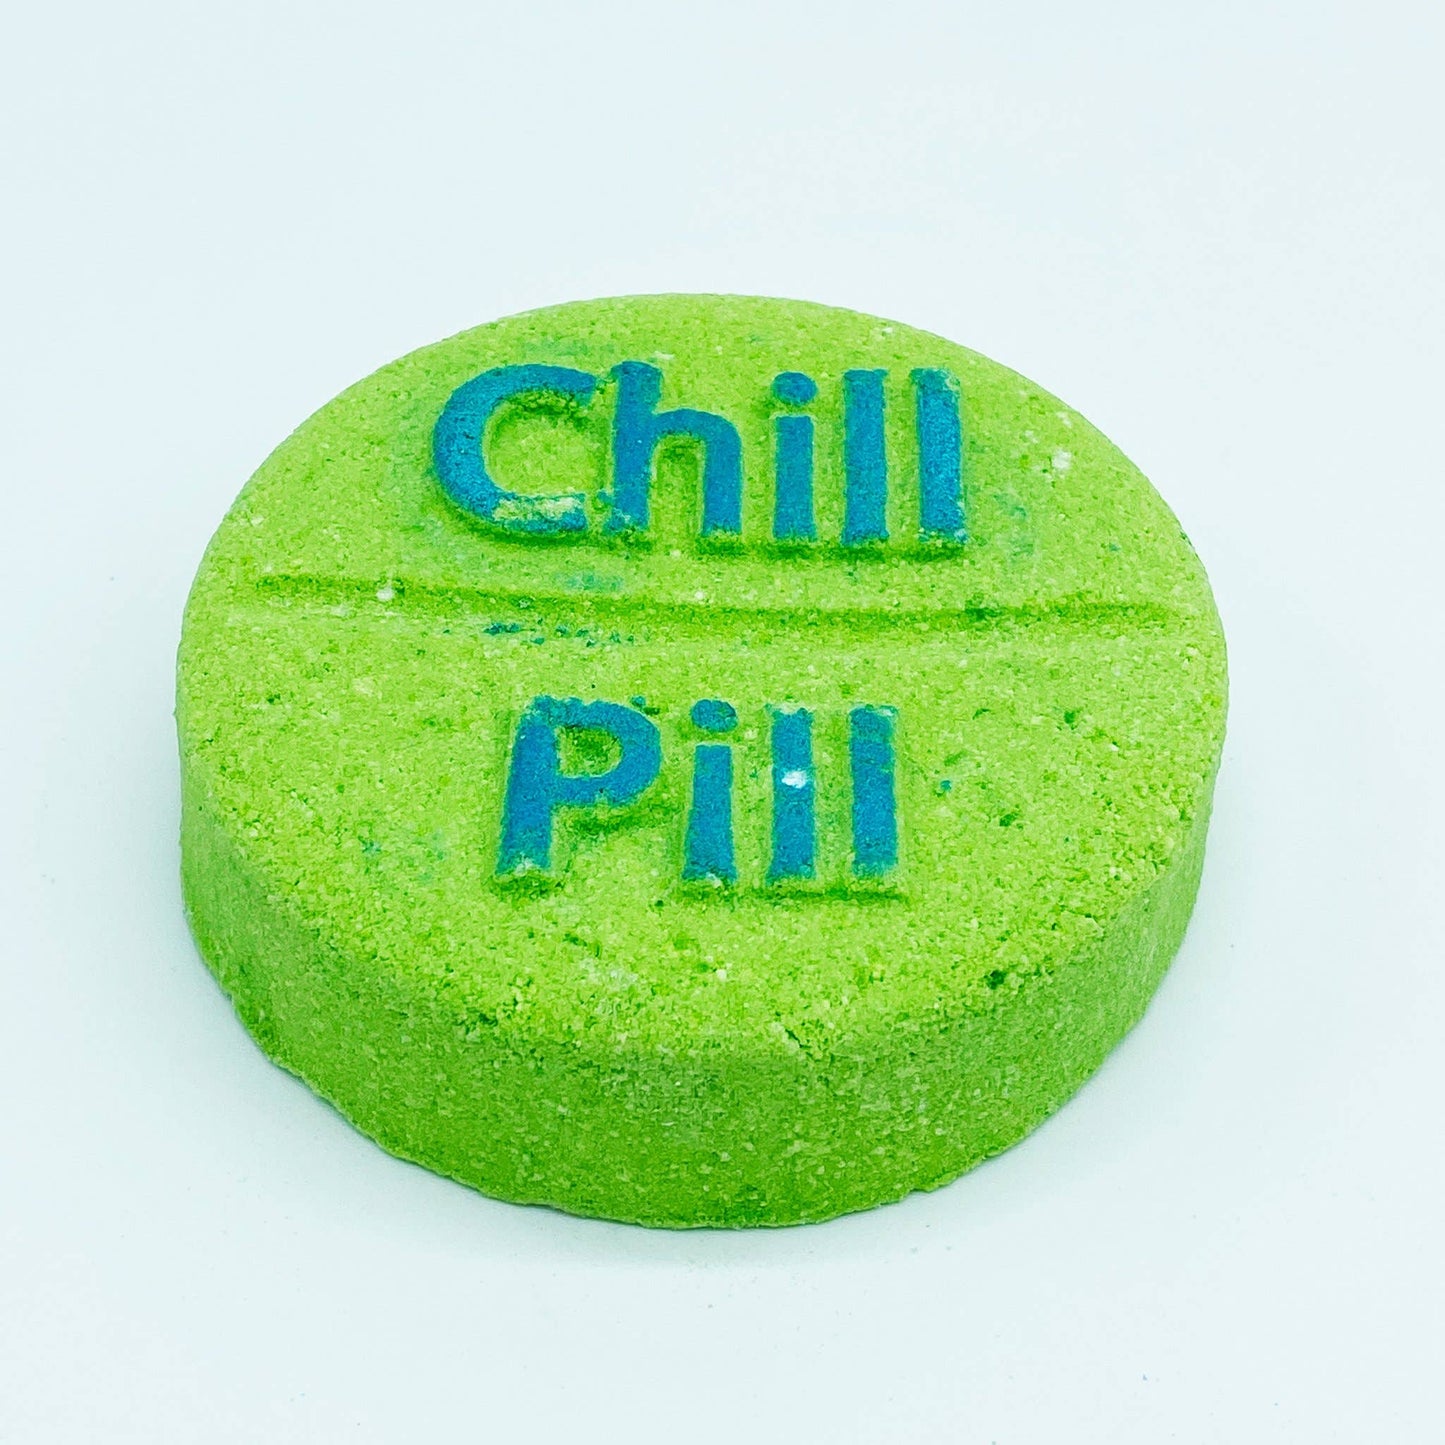 Chill Pill